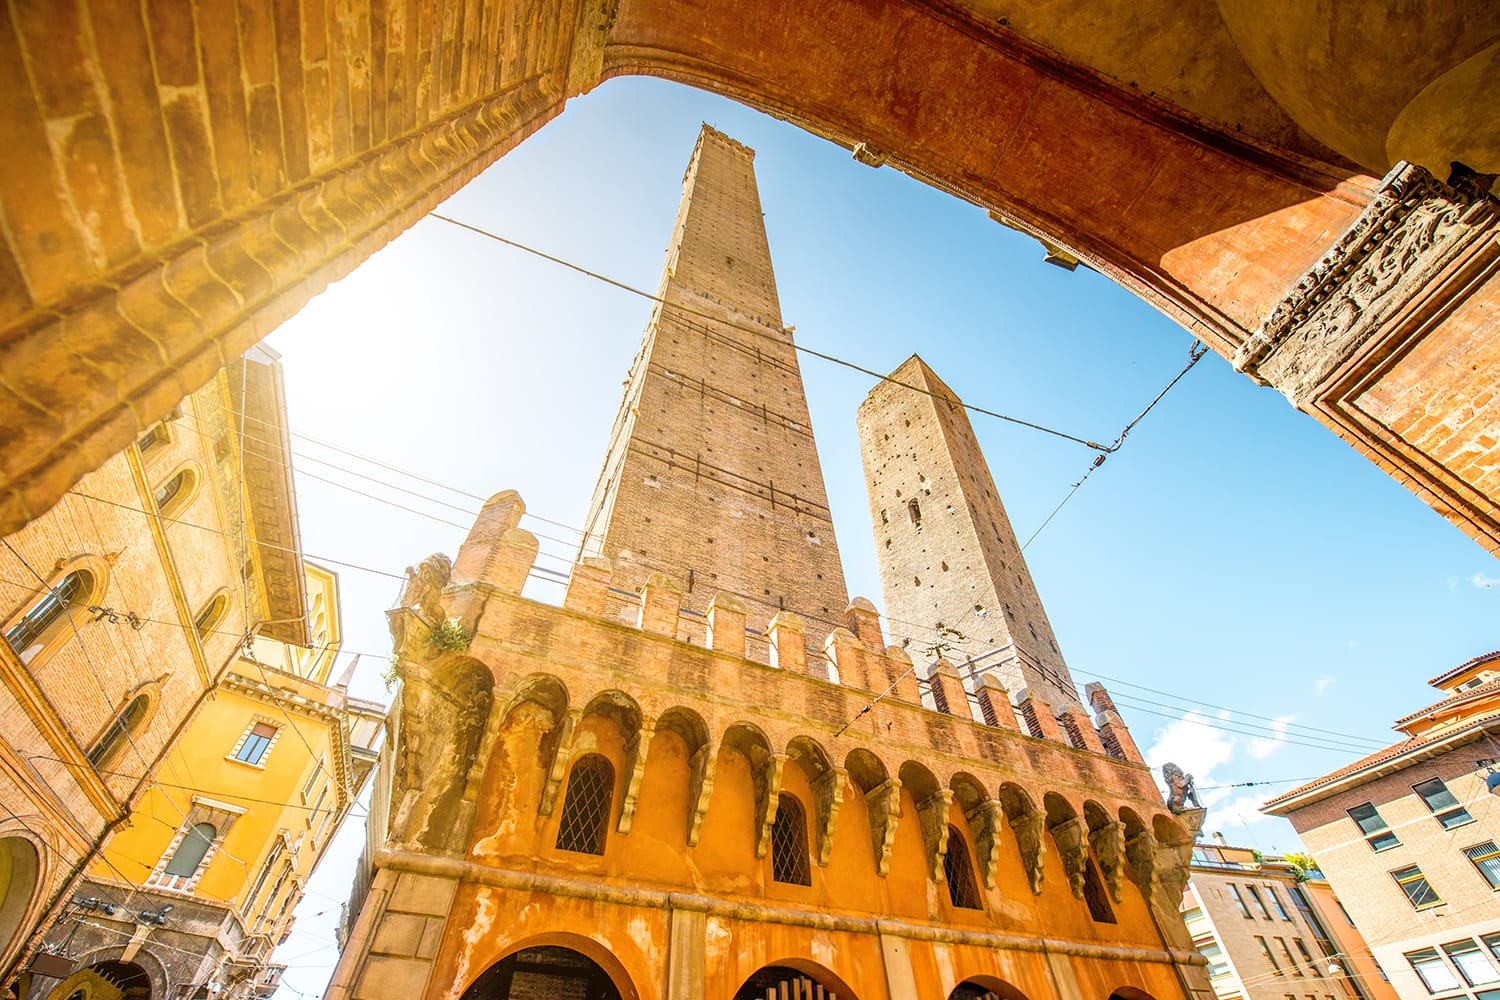 Δύο διάσημοι κεκλιμένοι πύργοι Garisenda και Asinelli στην πόλη της Μπολόνια. Οι δύο κεκλιμένοι πύργοι της Μπολόνια είναι το κύριο σύμβολο της πόλης